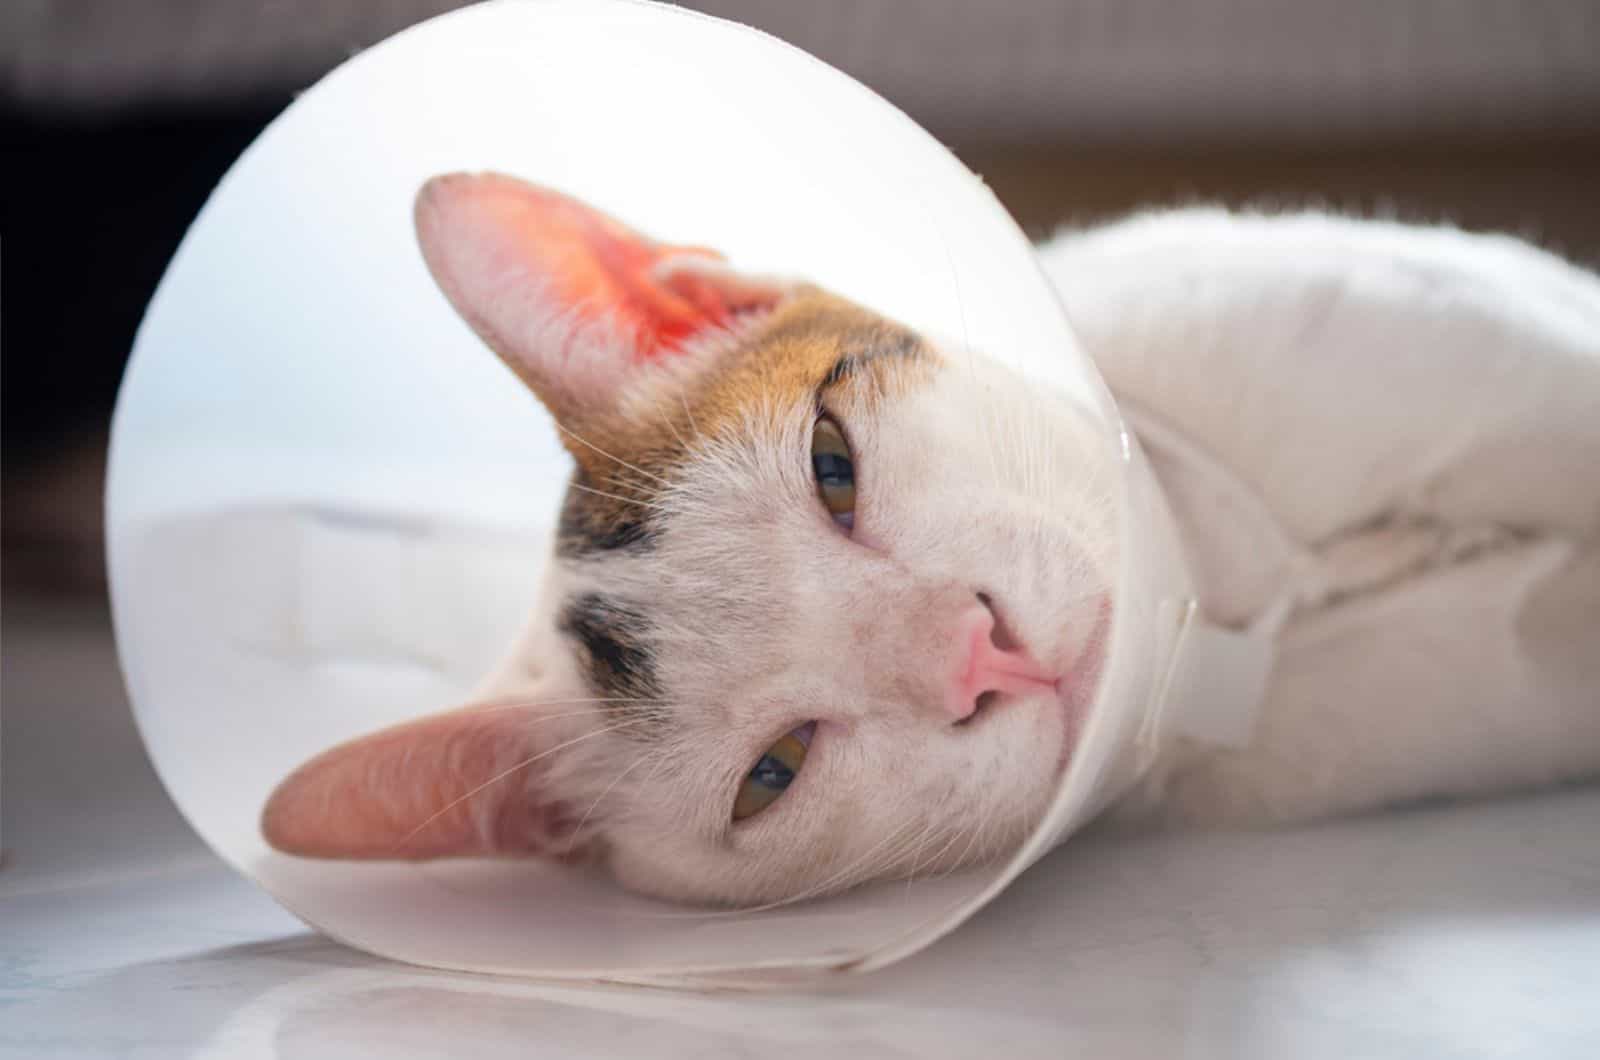 De kat draagt een halsband om te voorkomen dat de wond na sterilisatie wordt gelikt